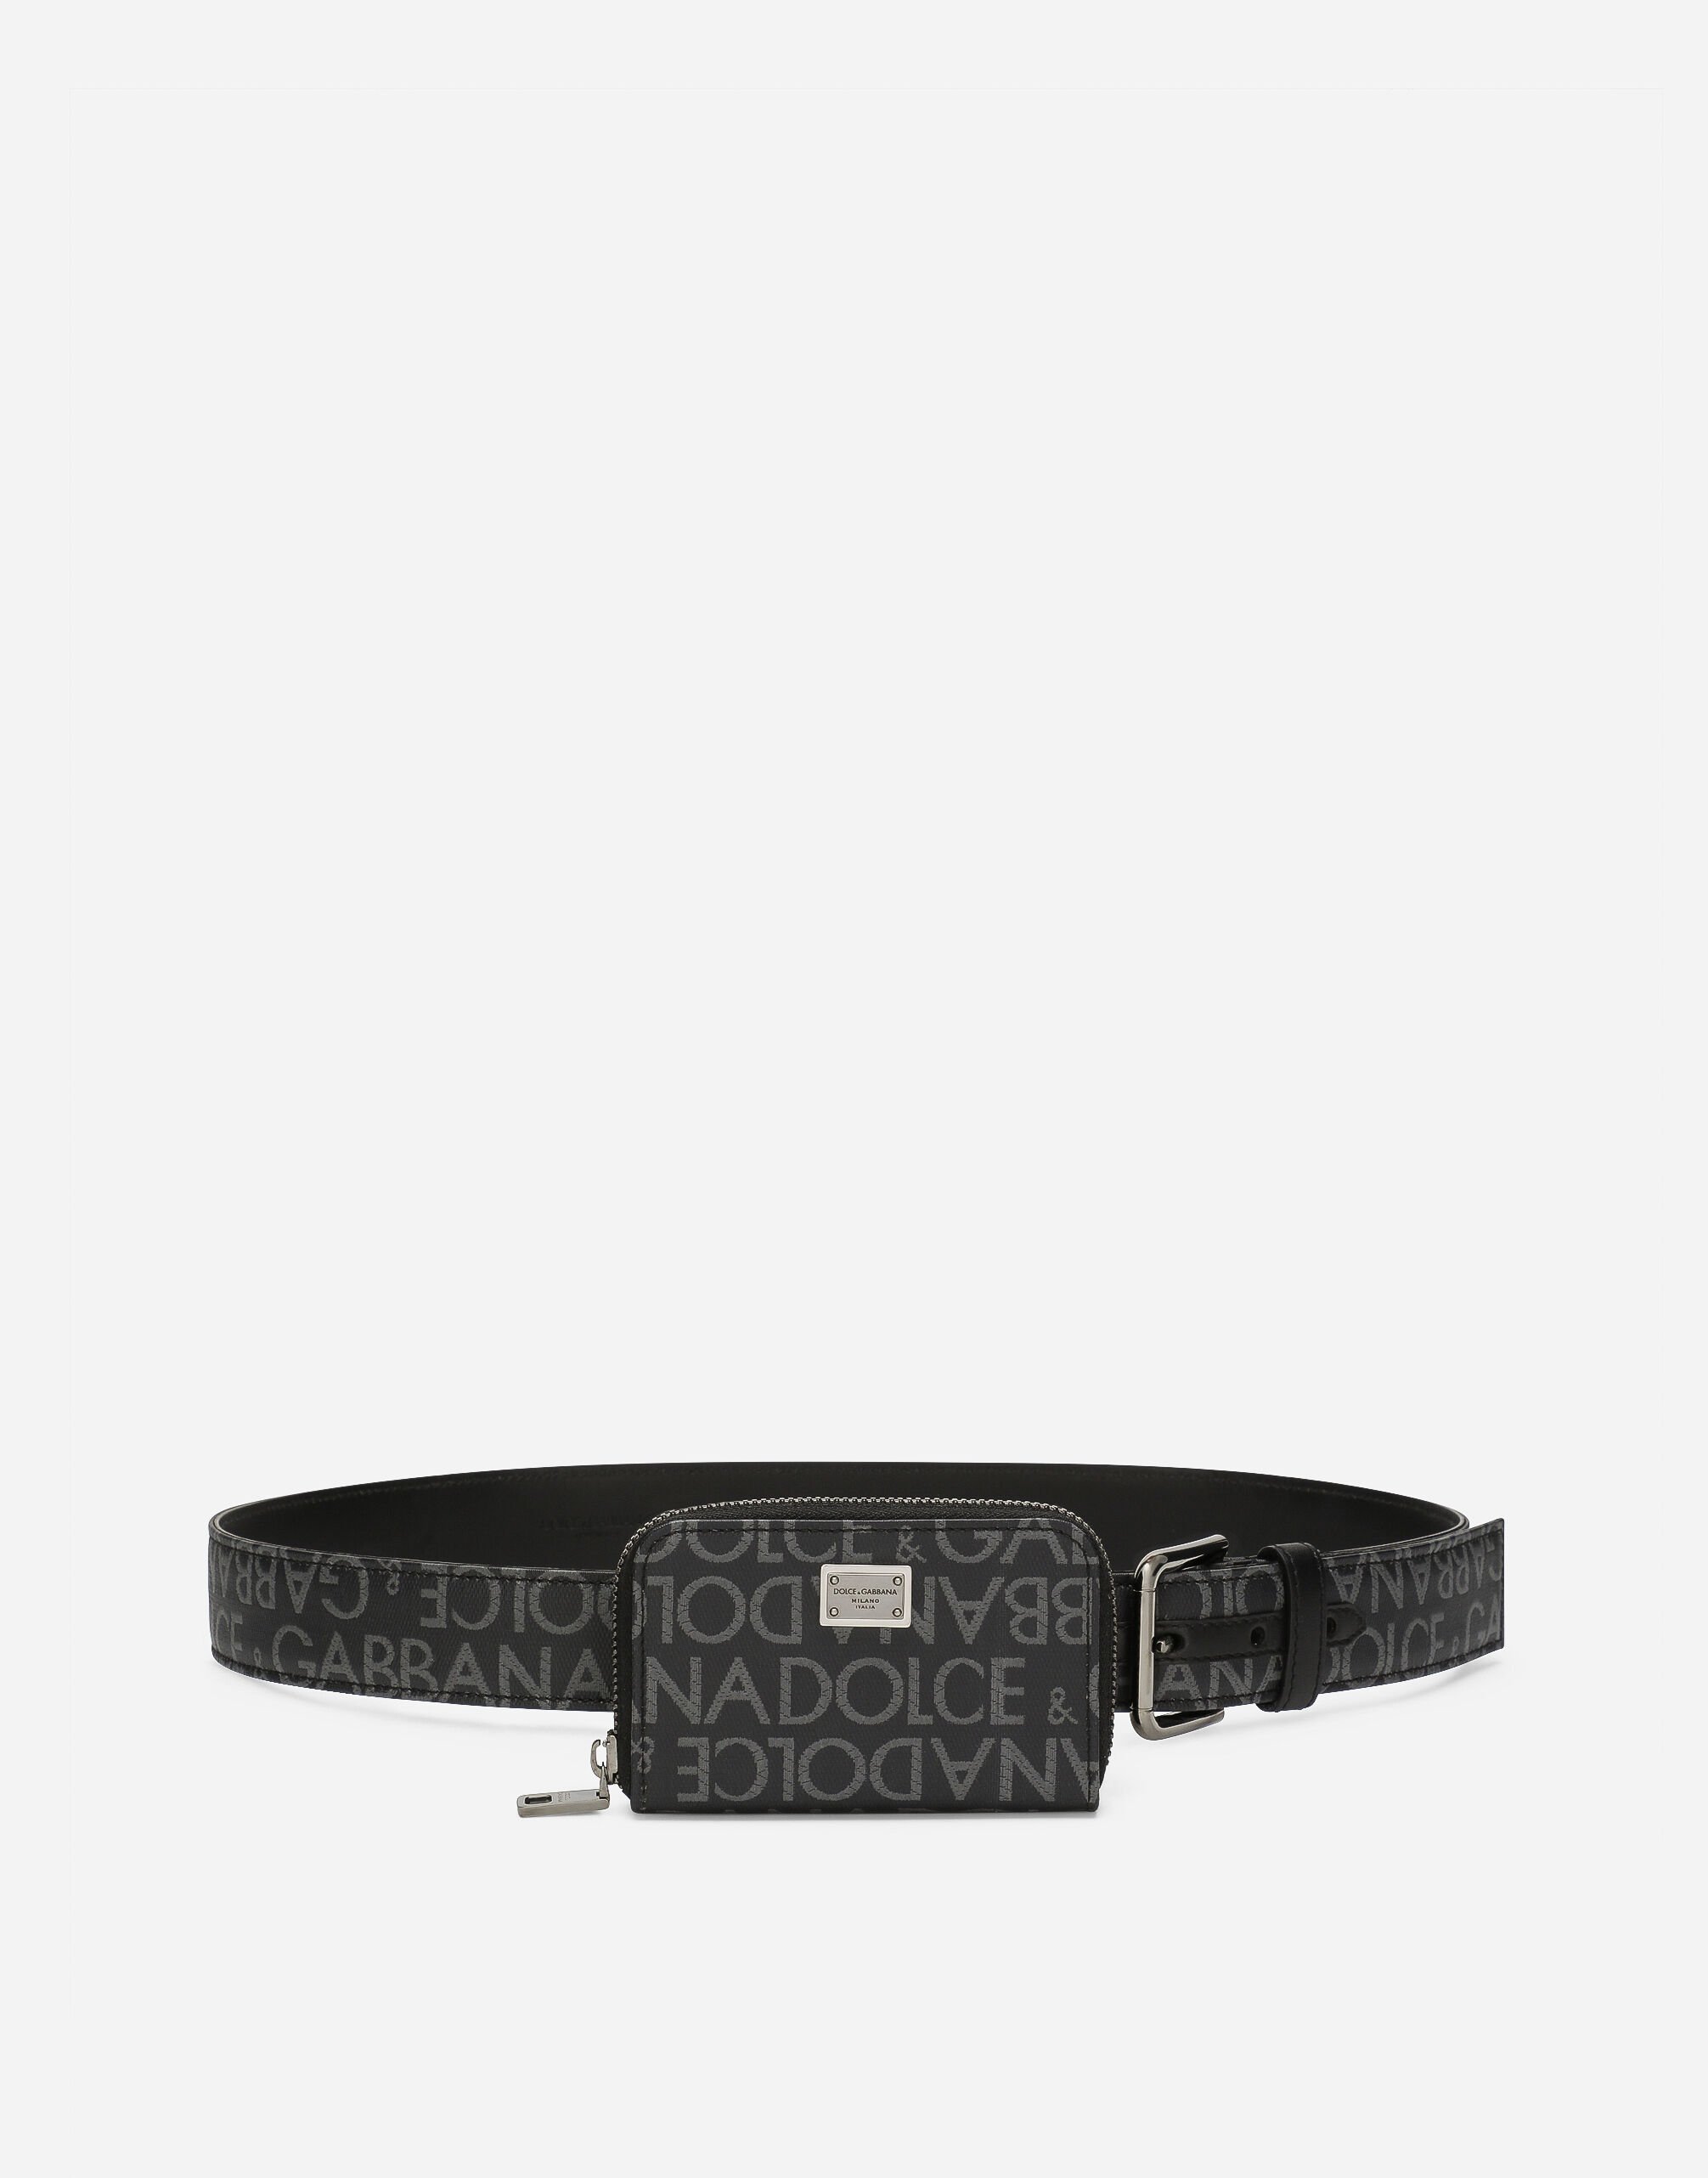 Dolce & Gabbana マルチファンクションベルト コーティングジャカード ブラック BC4646AX622